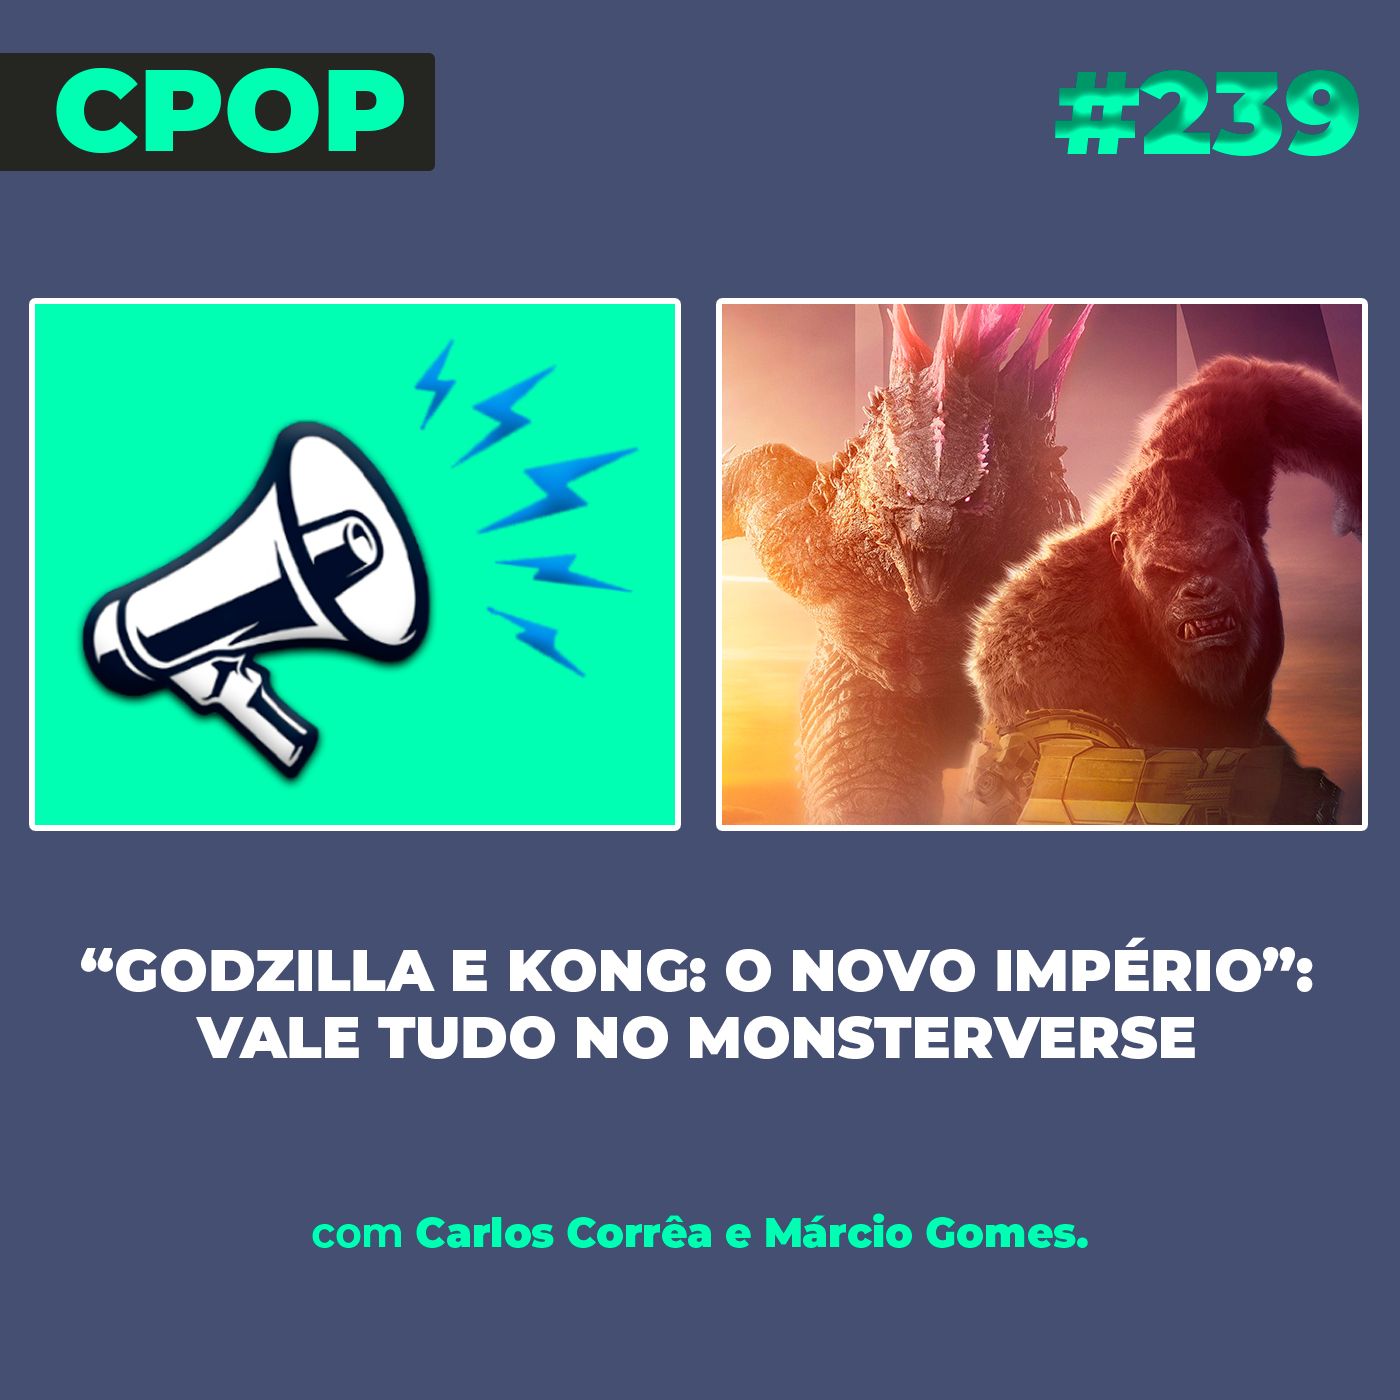 #239 “Godzilla e Kong: O Novo Império”: vale tudo no MonsterVerse